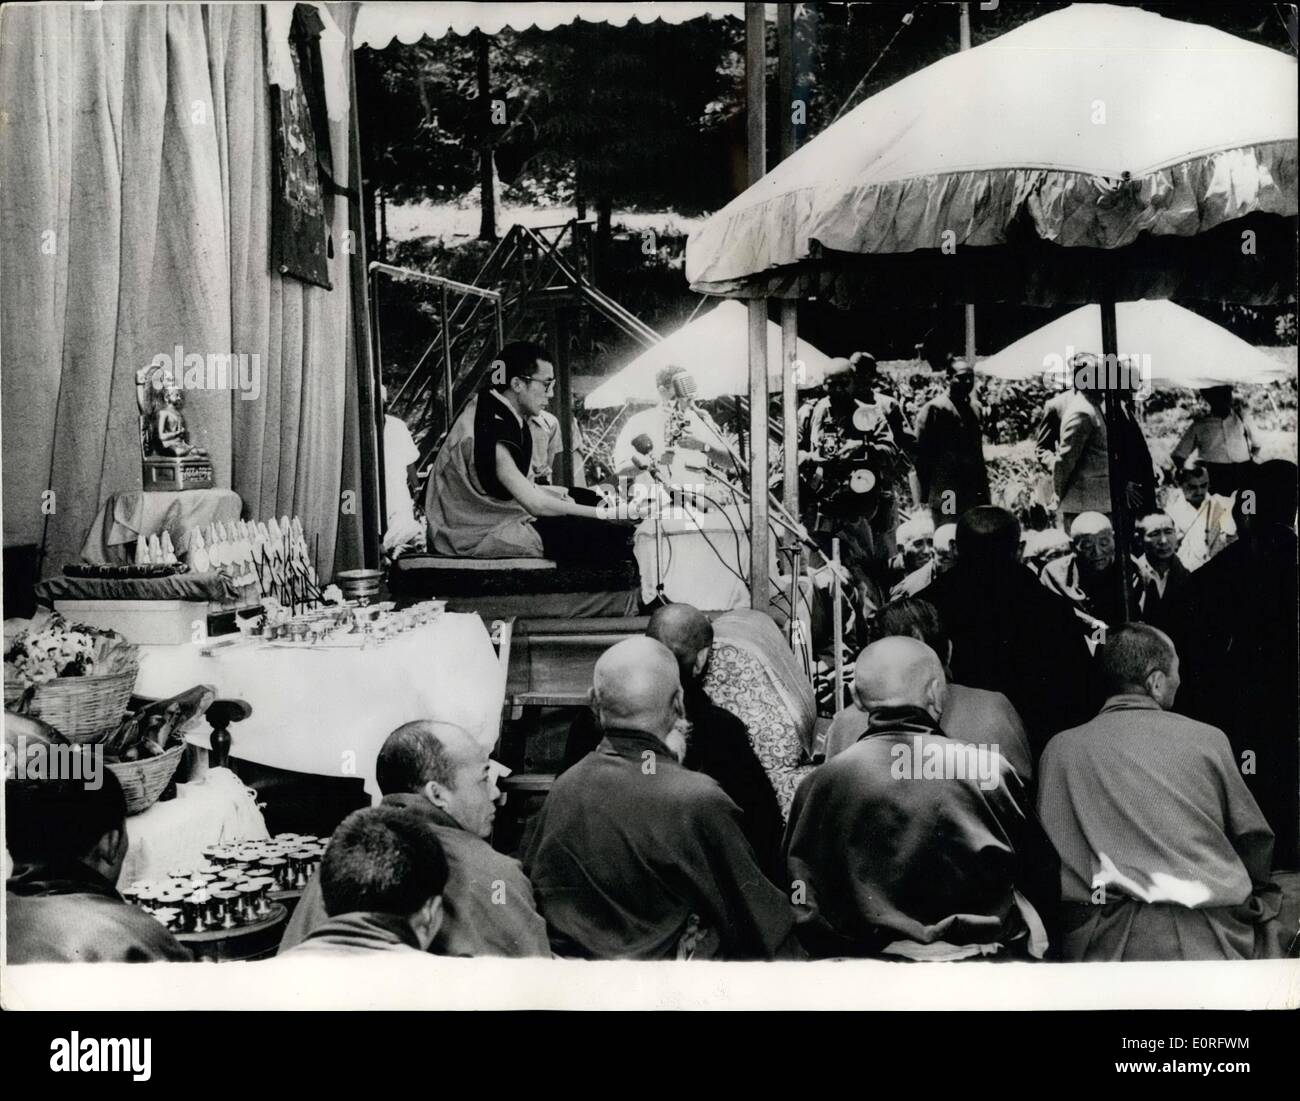 5. Mai 1959 - präsentiert The Birla House in Mussorie, Indien, ein buntes Aussehen am Vorabend des Buddha Purni ein am Freitag, wenn ein großes fest, Gebete und Rituale, fanden statt, an der der Dalai Lama teilnahmen. Das Foto zeigt den Dalai Lama dirigieren die Gebete vor eine große weltoffene Gemeinde. Stockfoto